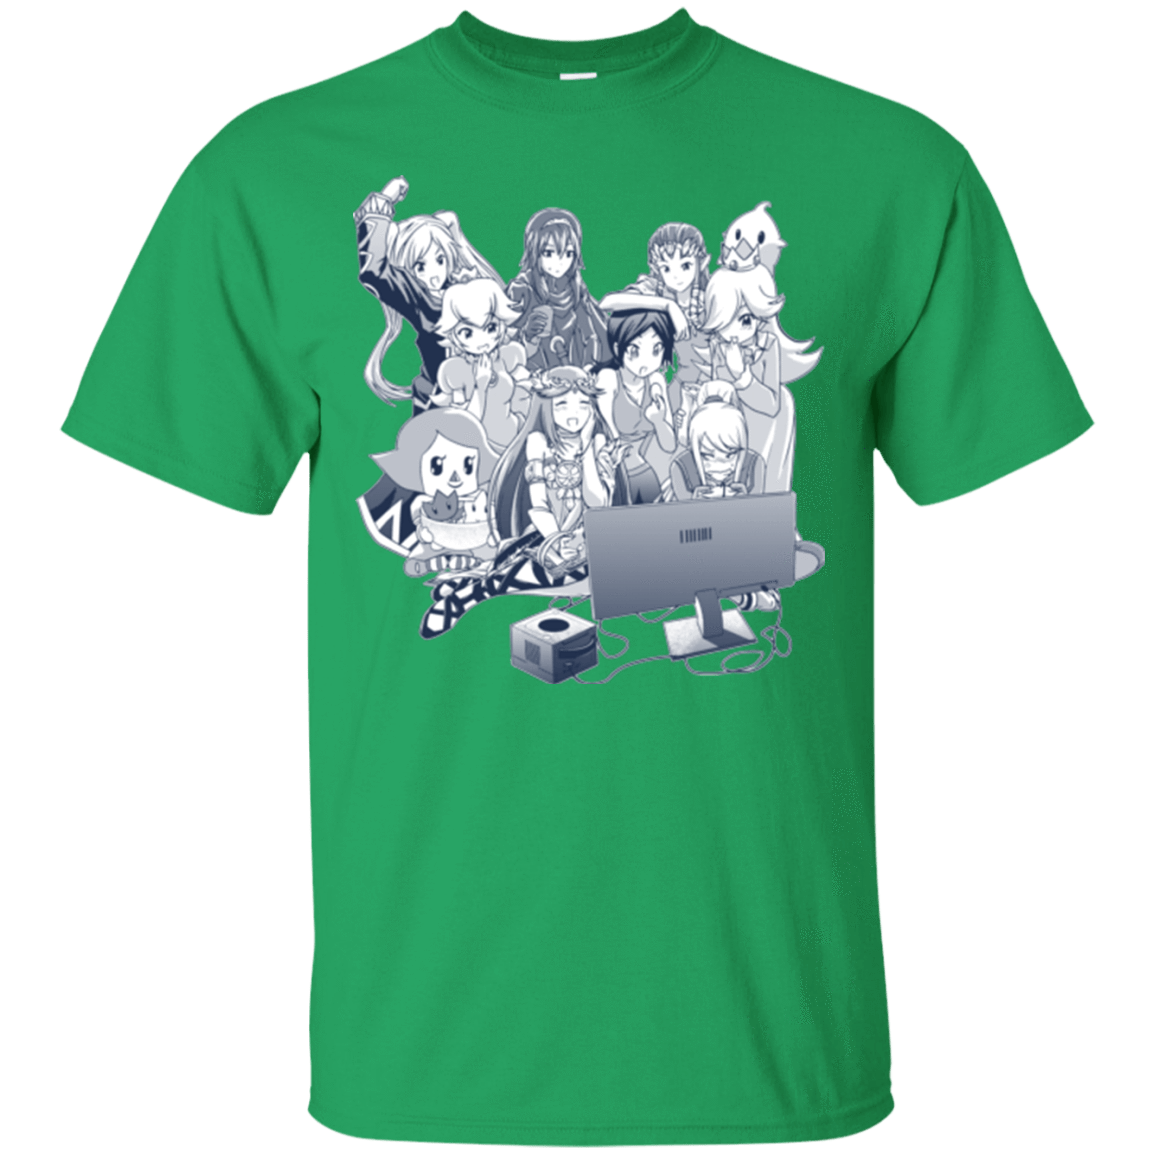 T-Shirts Irish Green / Small Girls Night Out T-Shirt